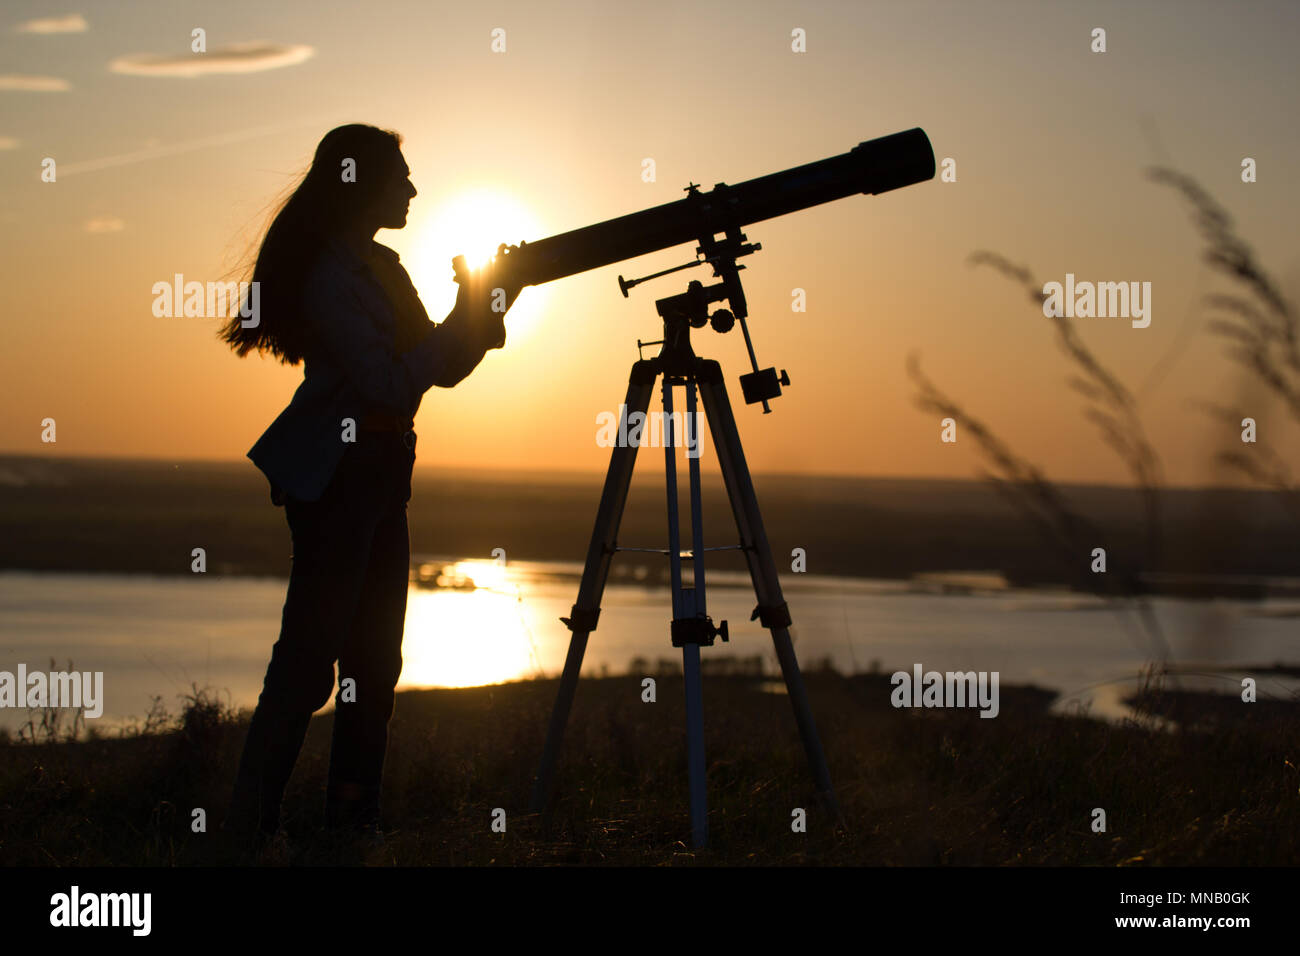 Silueta de mujer joven mirando a través del telescopio vista al